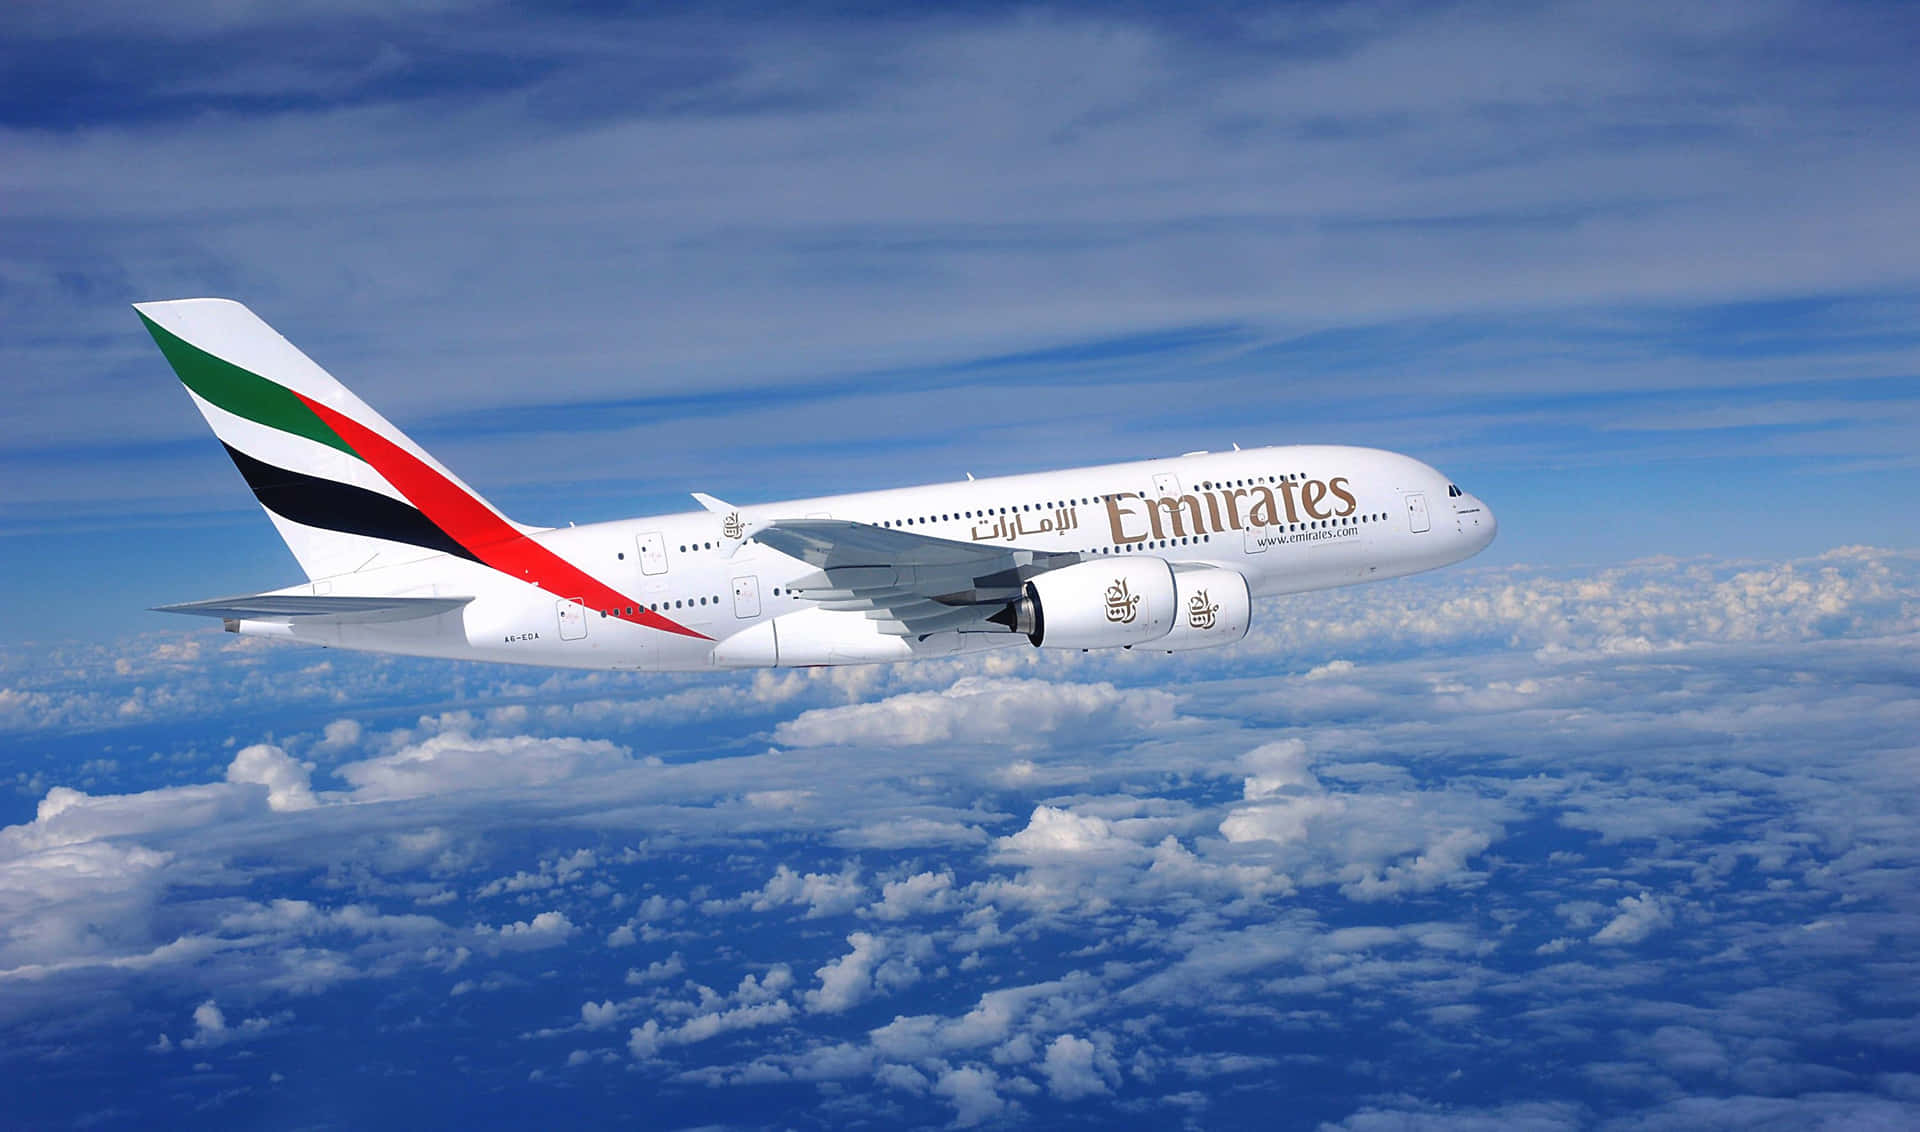 Emirates Airlines - Emirates A380 - Emirates A380 - Emirates A380